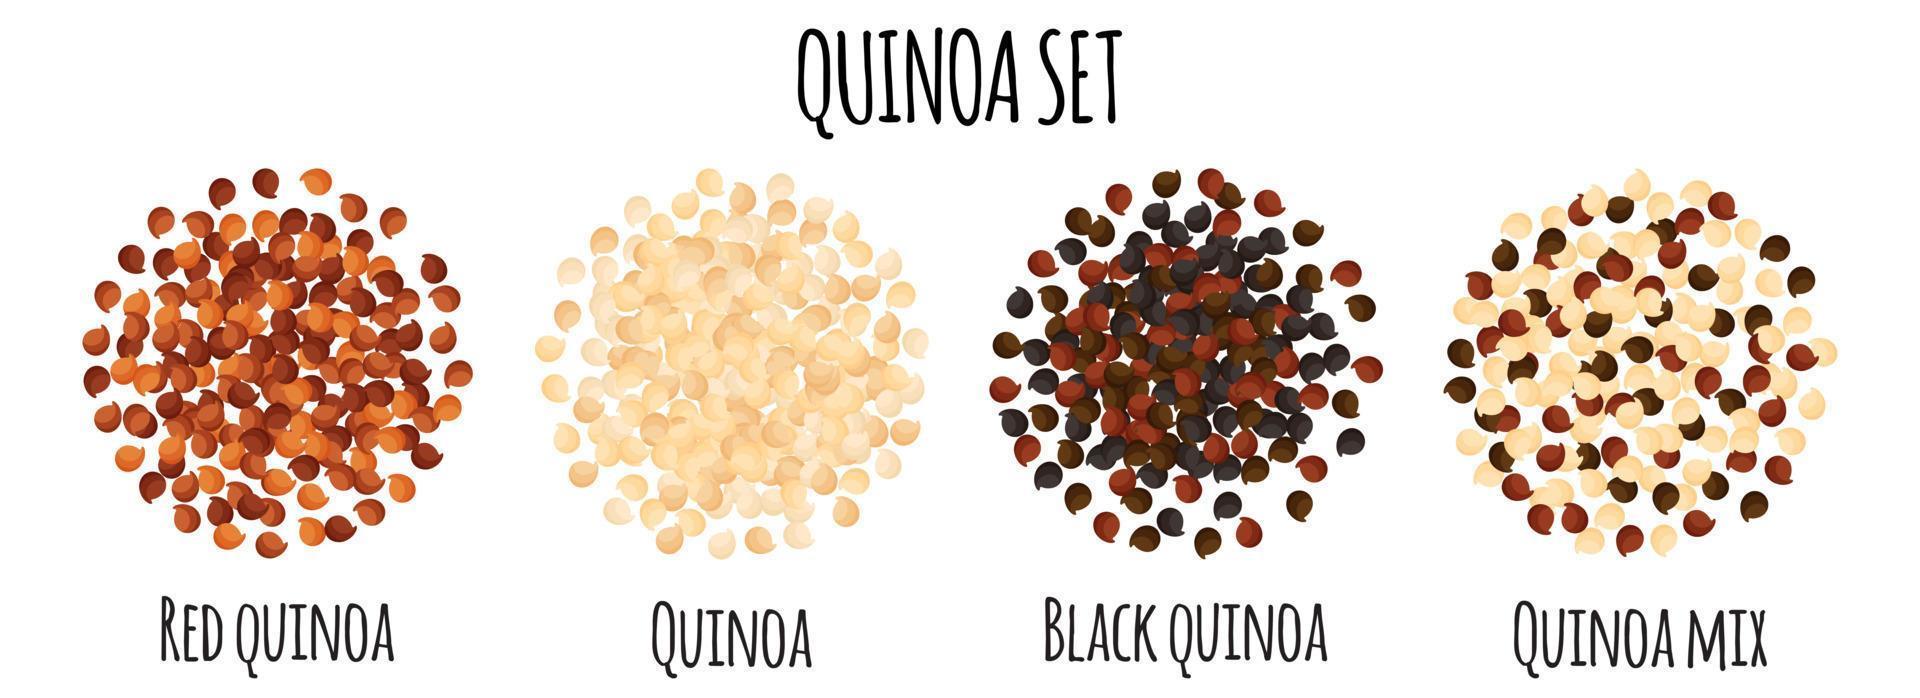 quinoa uppsättning med röd, vit, svart och blanda quinoa. vektor